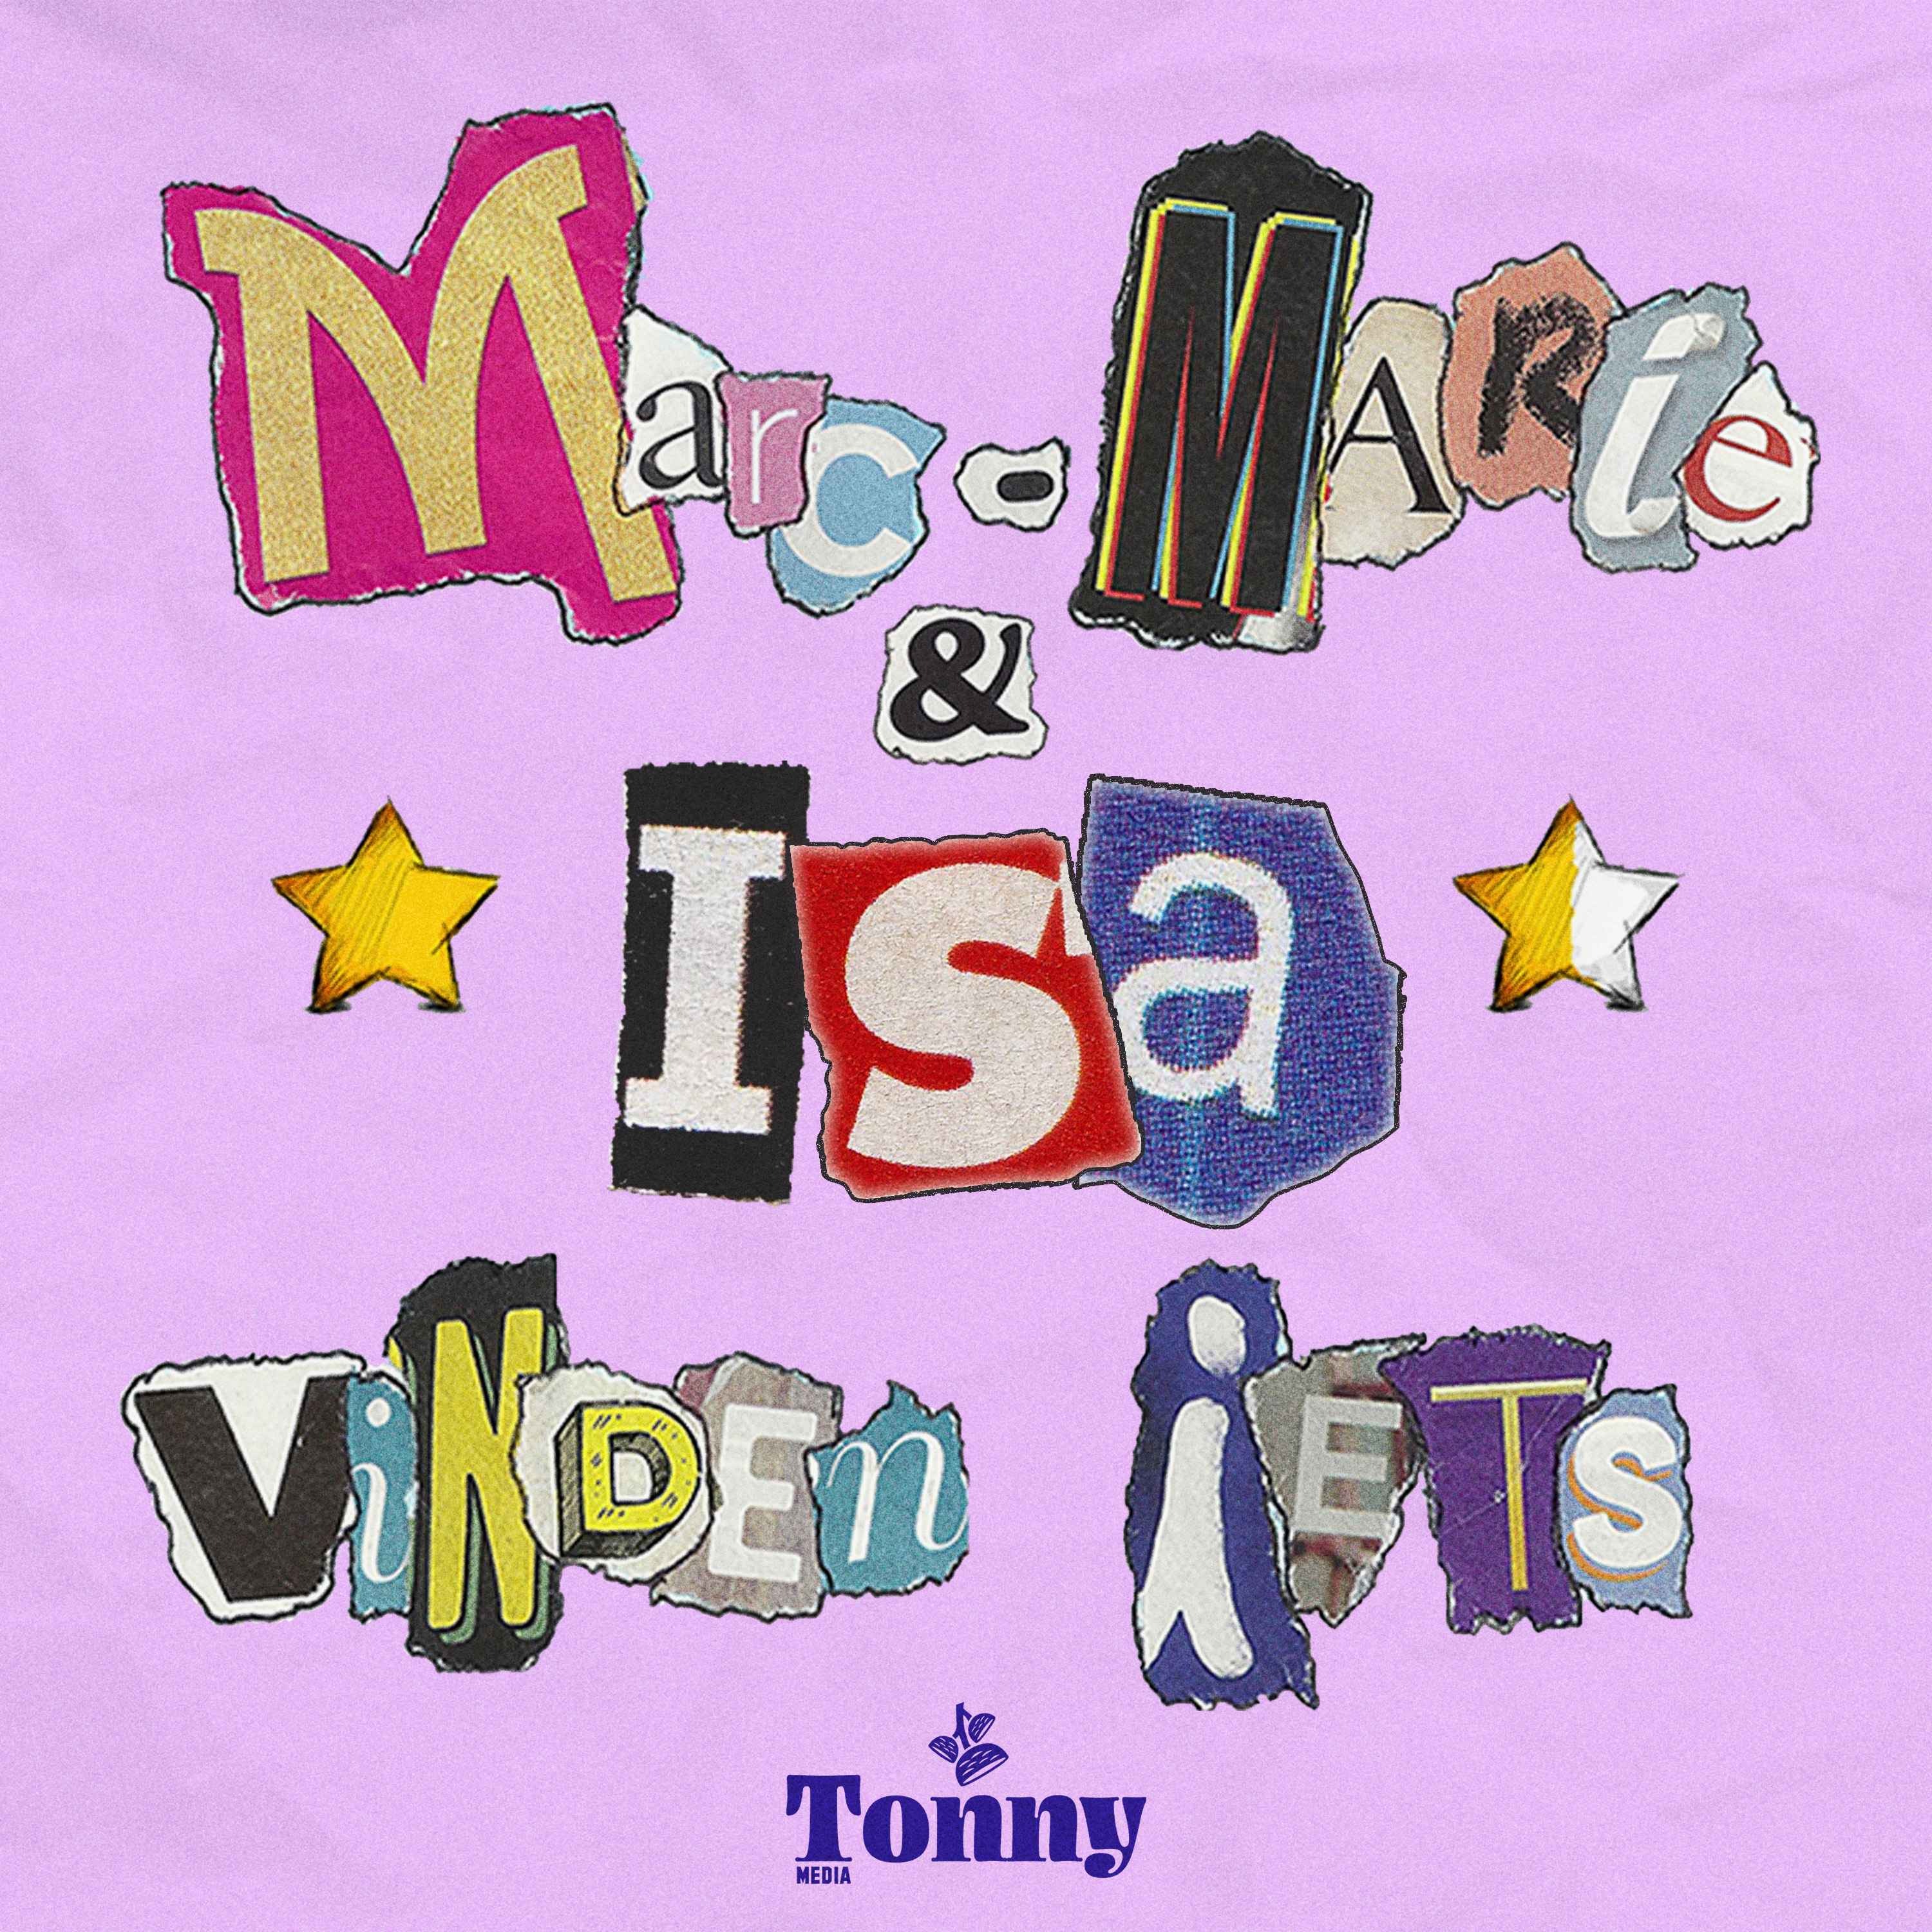 logo Marc-Marie & Isa Vinden Iets